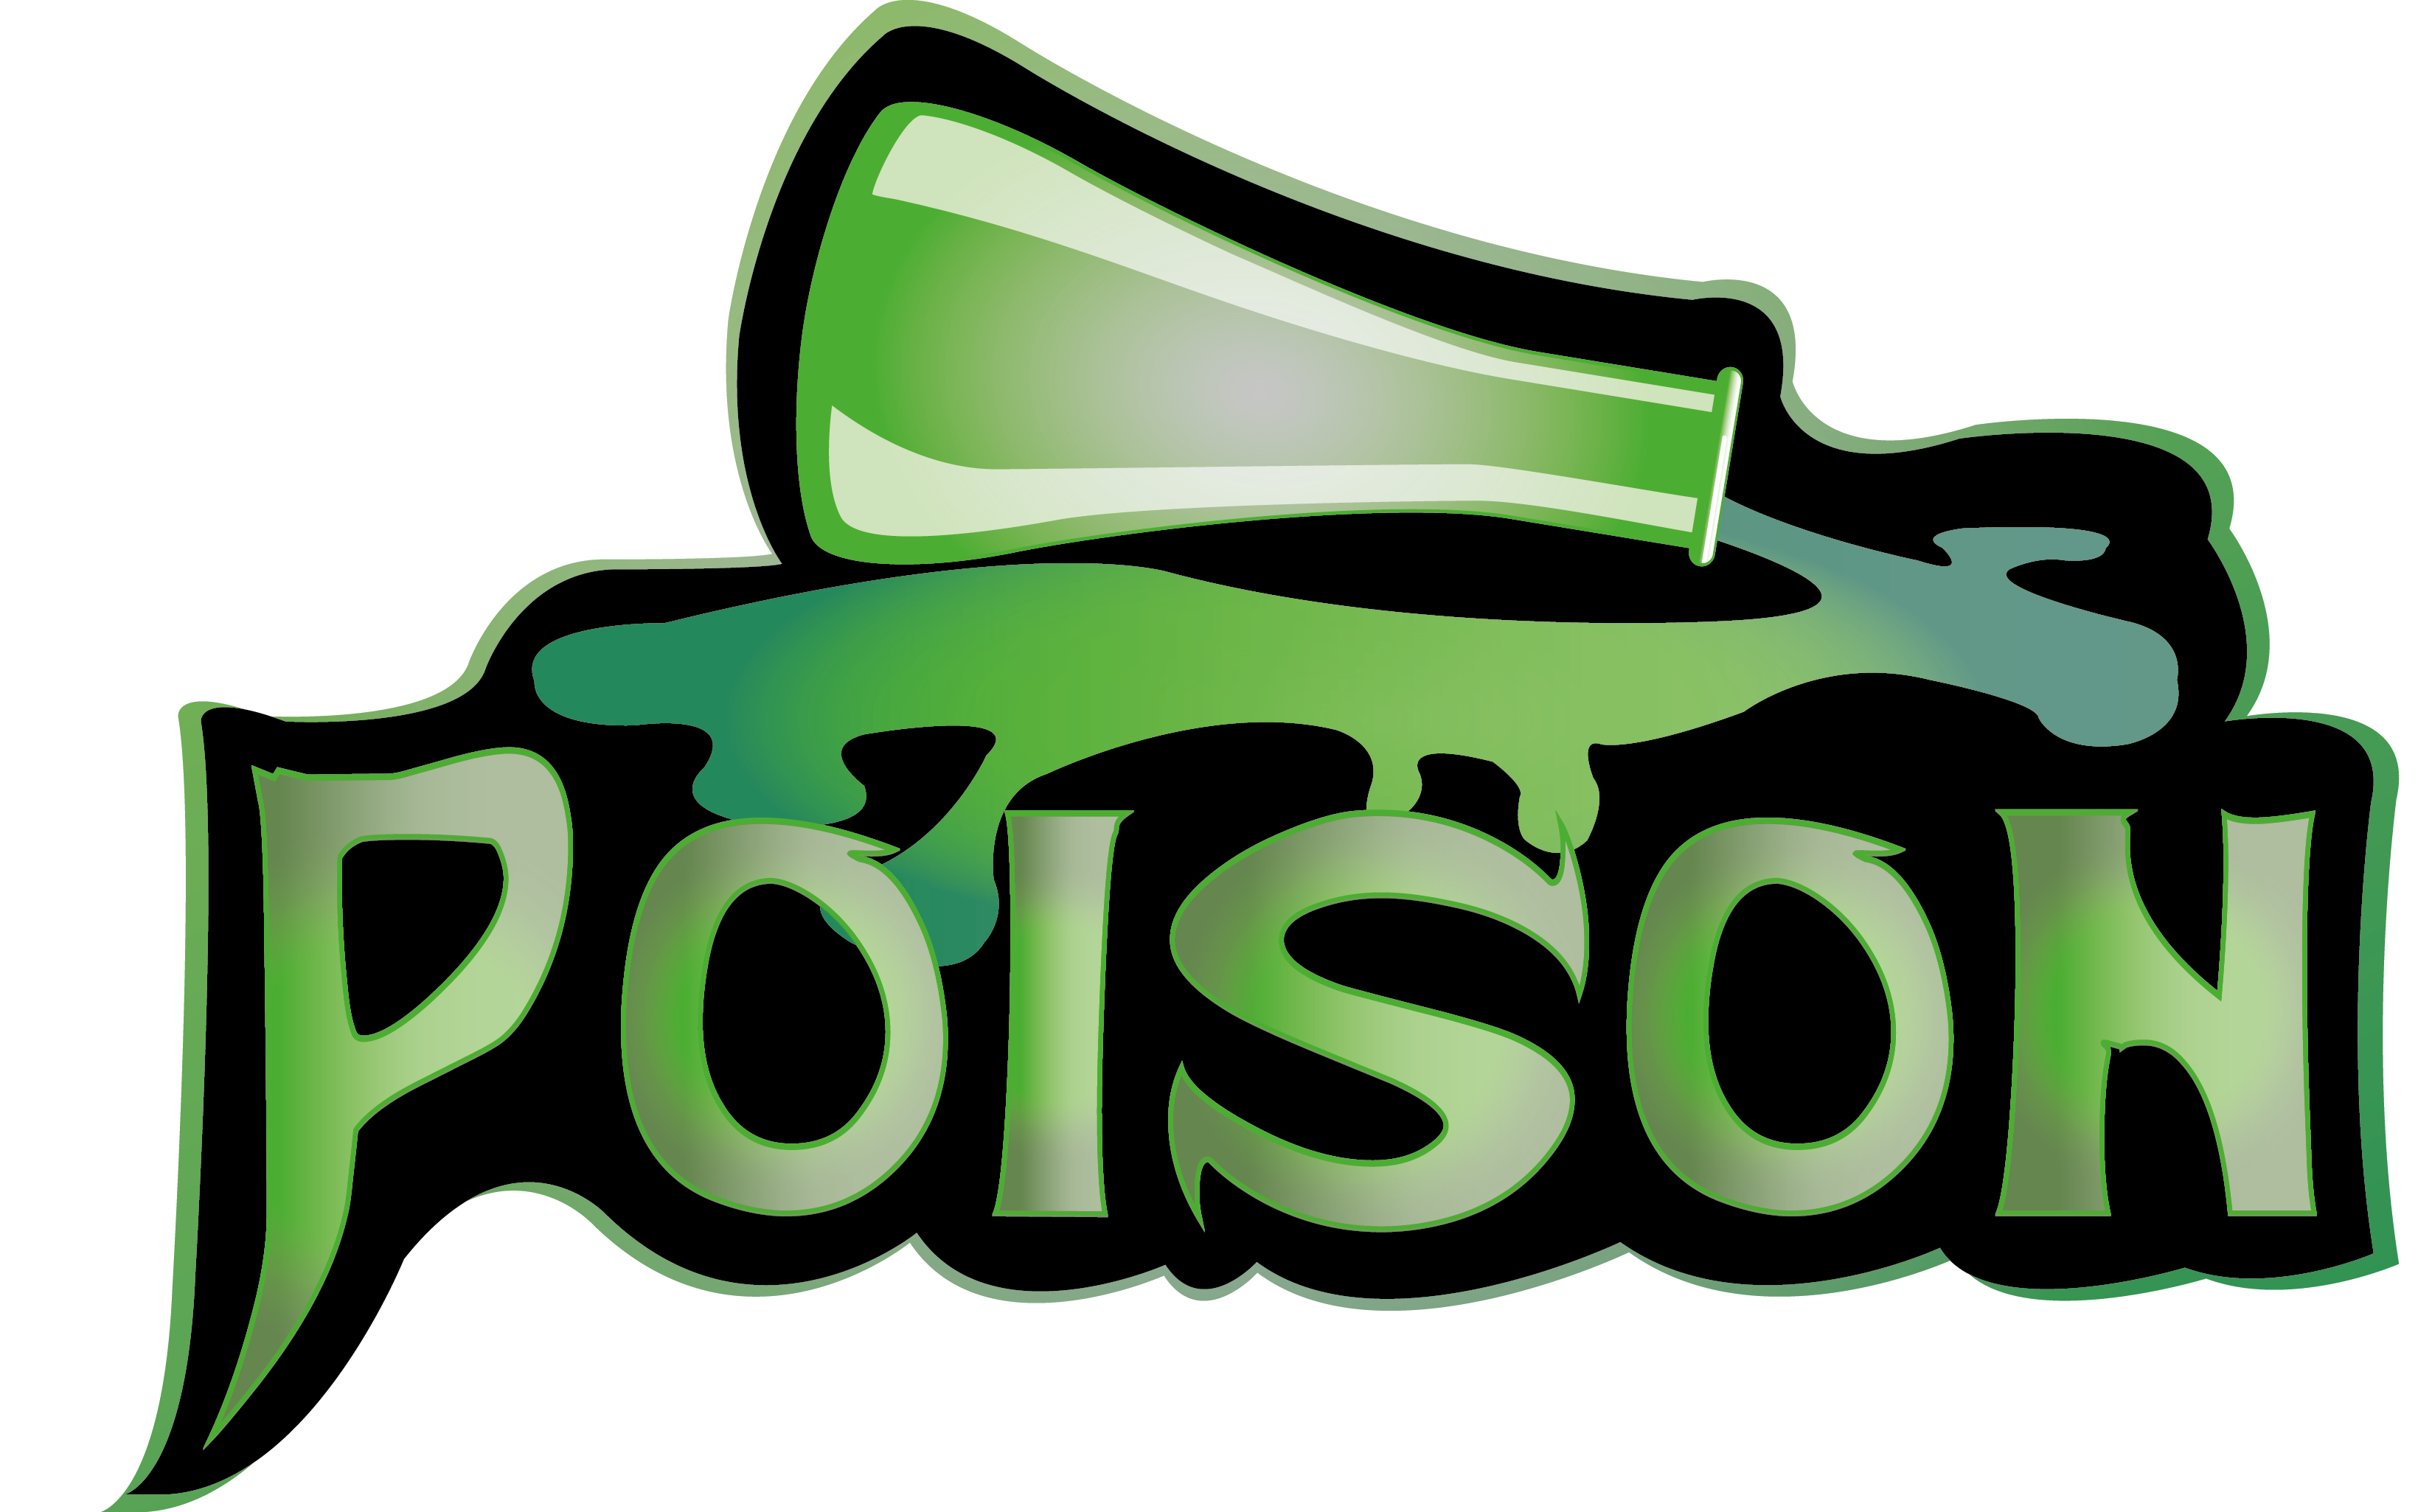 poison clipart